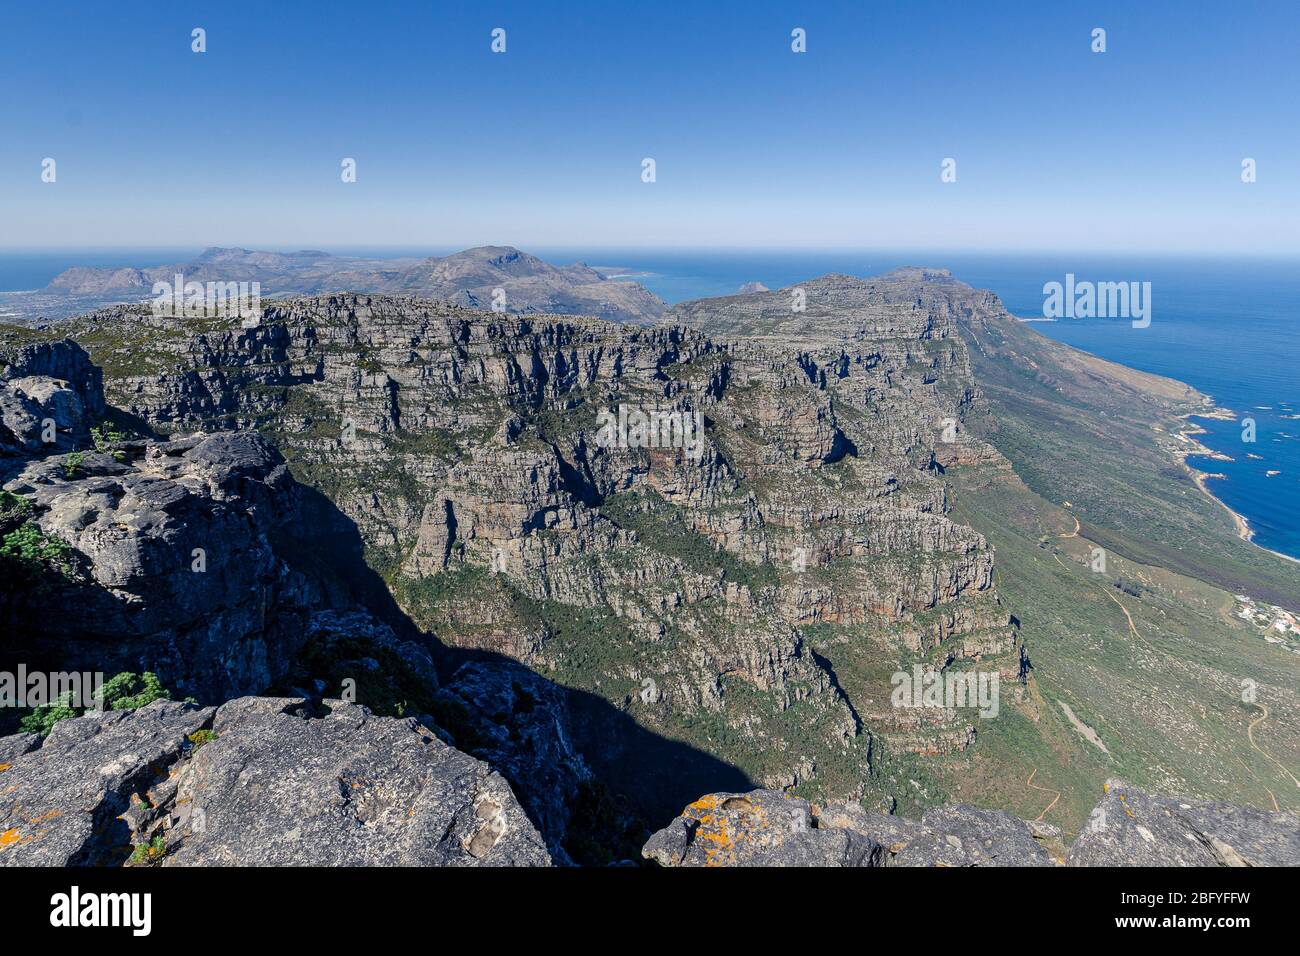 Landschaftlich schöne Aussicht über zwölf Apostel Gipfel entlang der Atlantikküste von oben auf dem Table Mountain Nationalpark Gebiet Kapstadt Südafrika Stockfoto